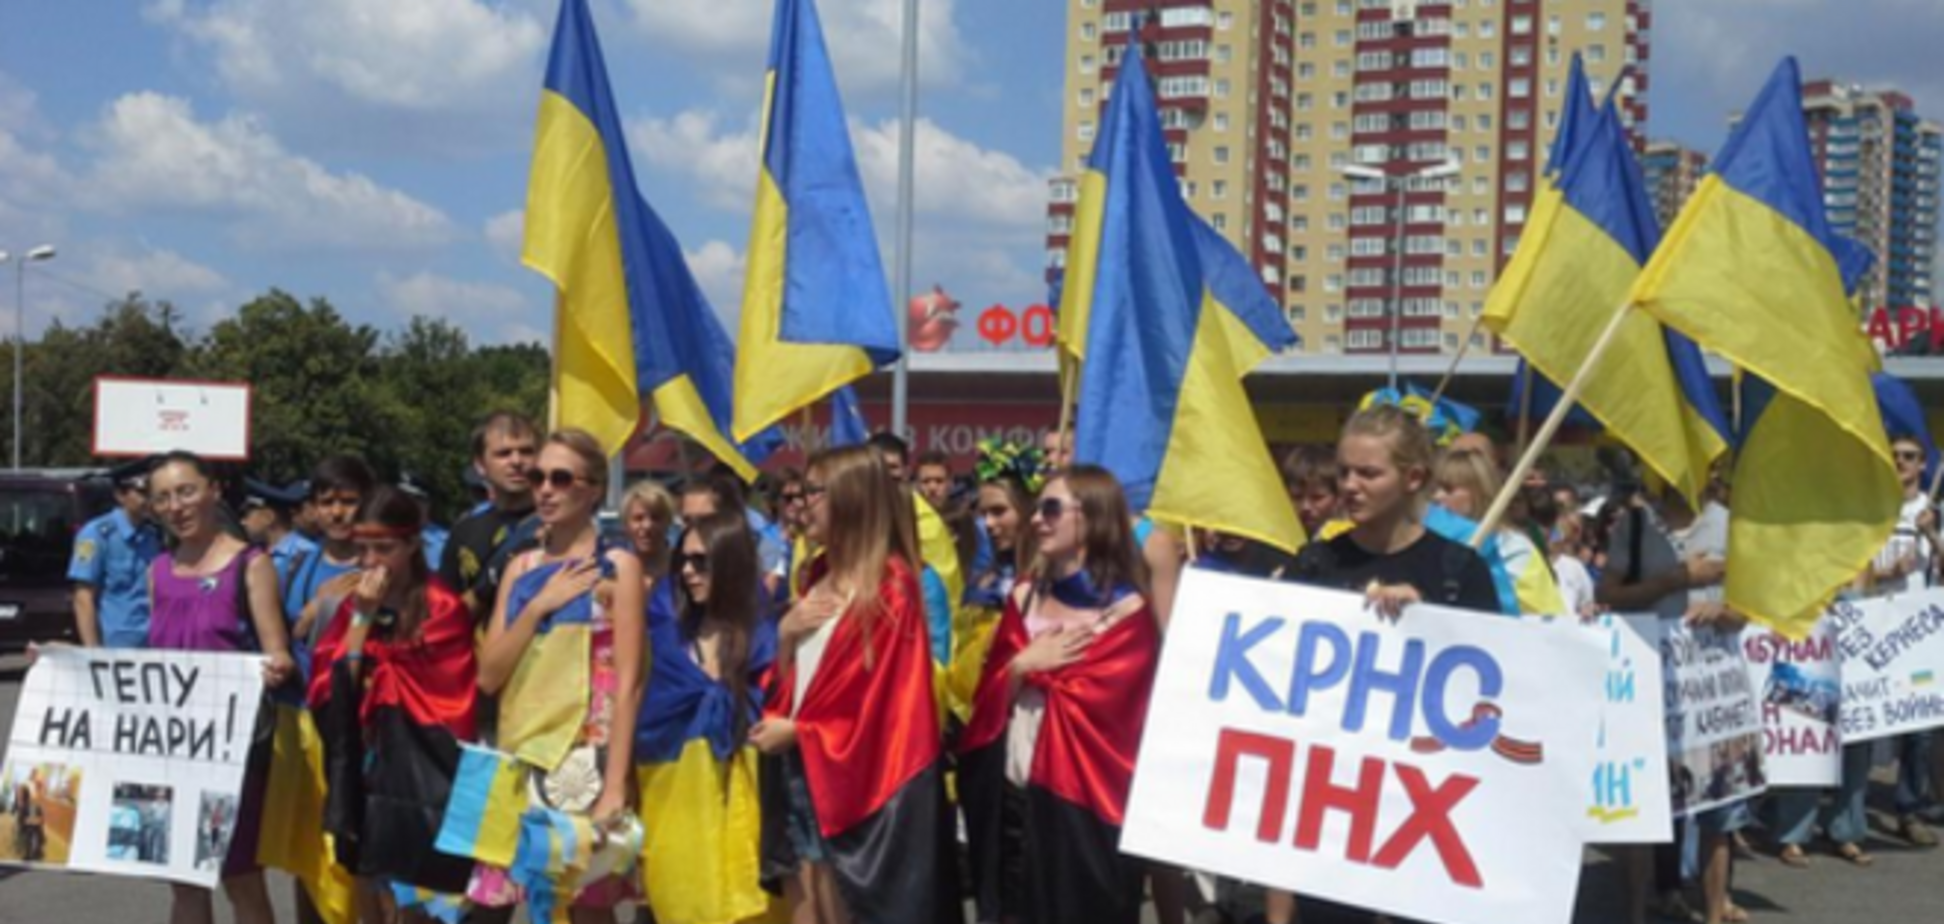 Харьковчане устроили патриотический марш против Кернеса: 'Харьков без Гепы'